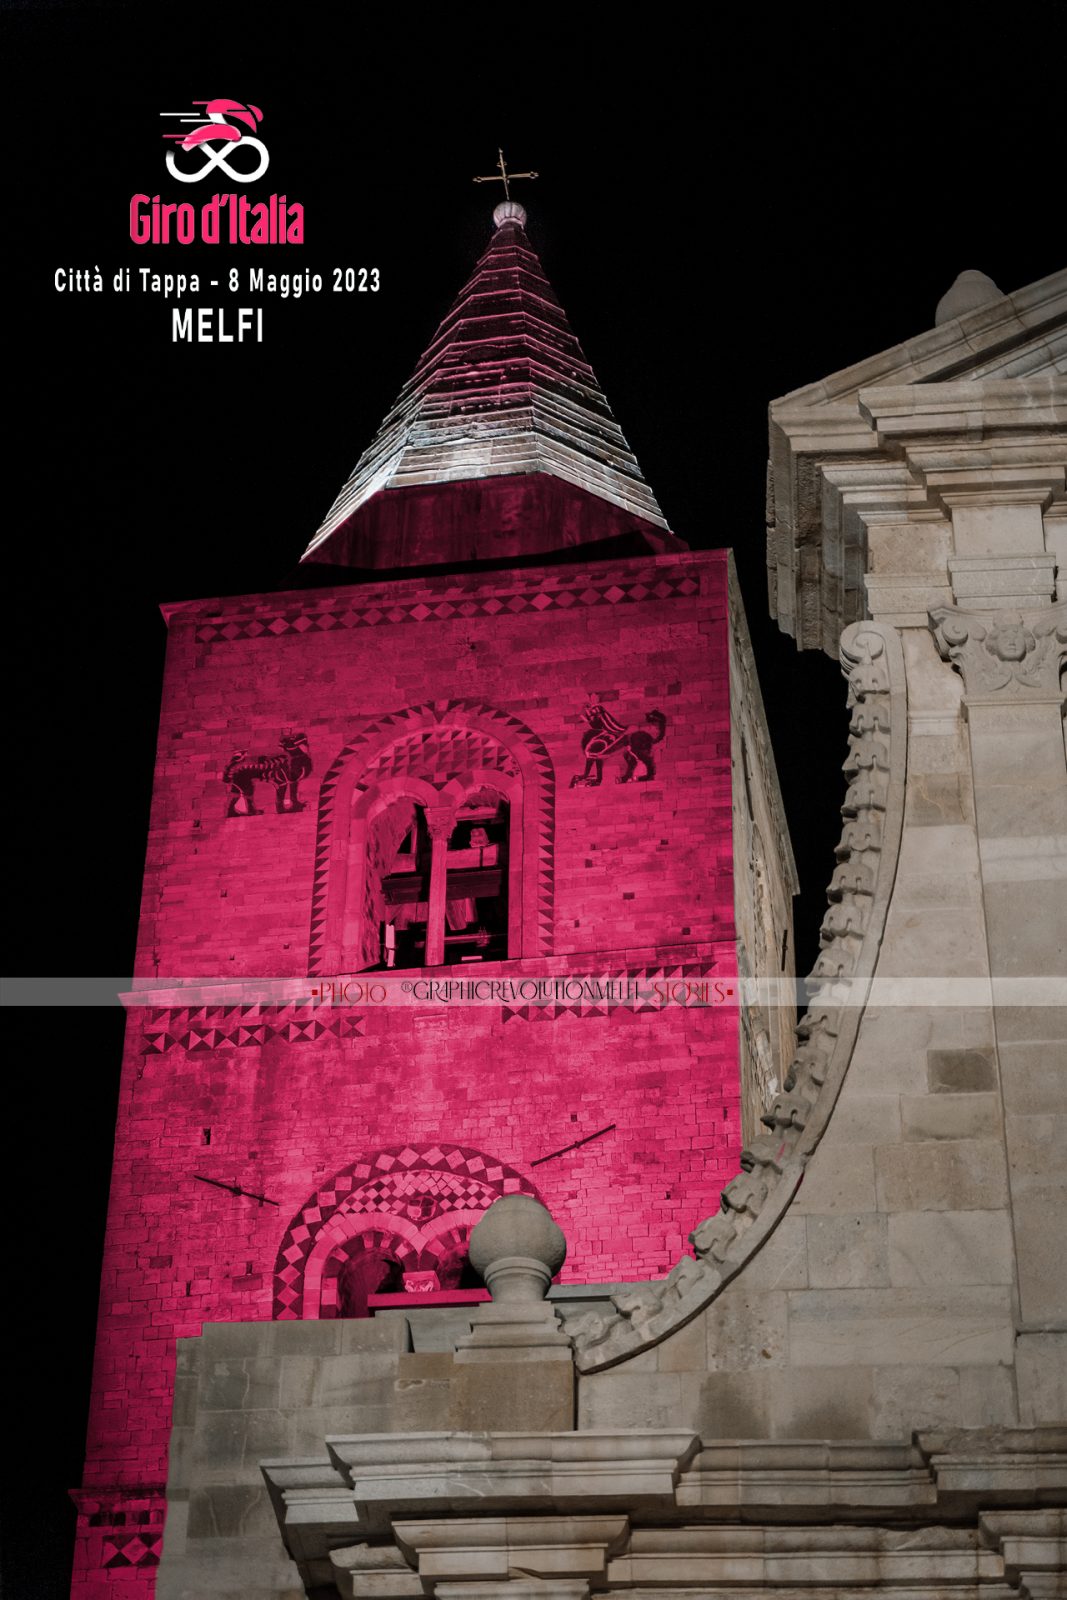 giro d'italia 2023 terza tappa vasto melfi le foto campanile cattedrale melfi rosa